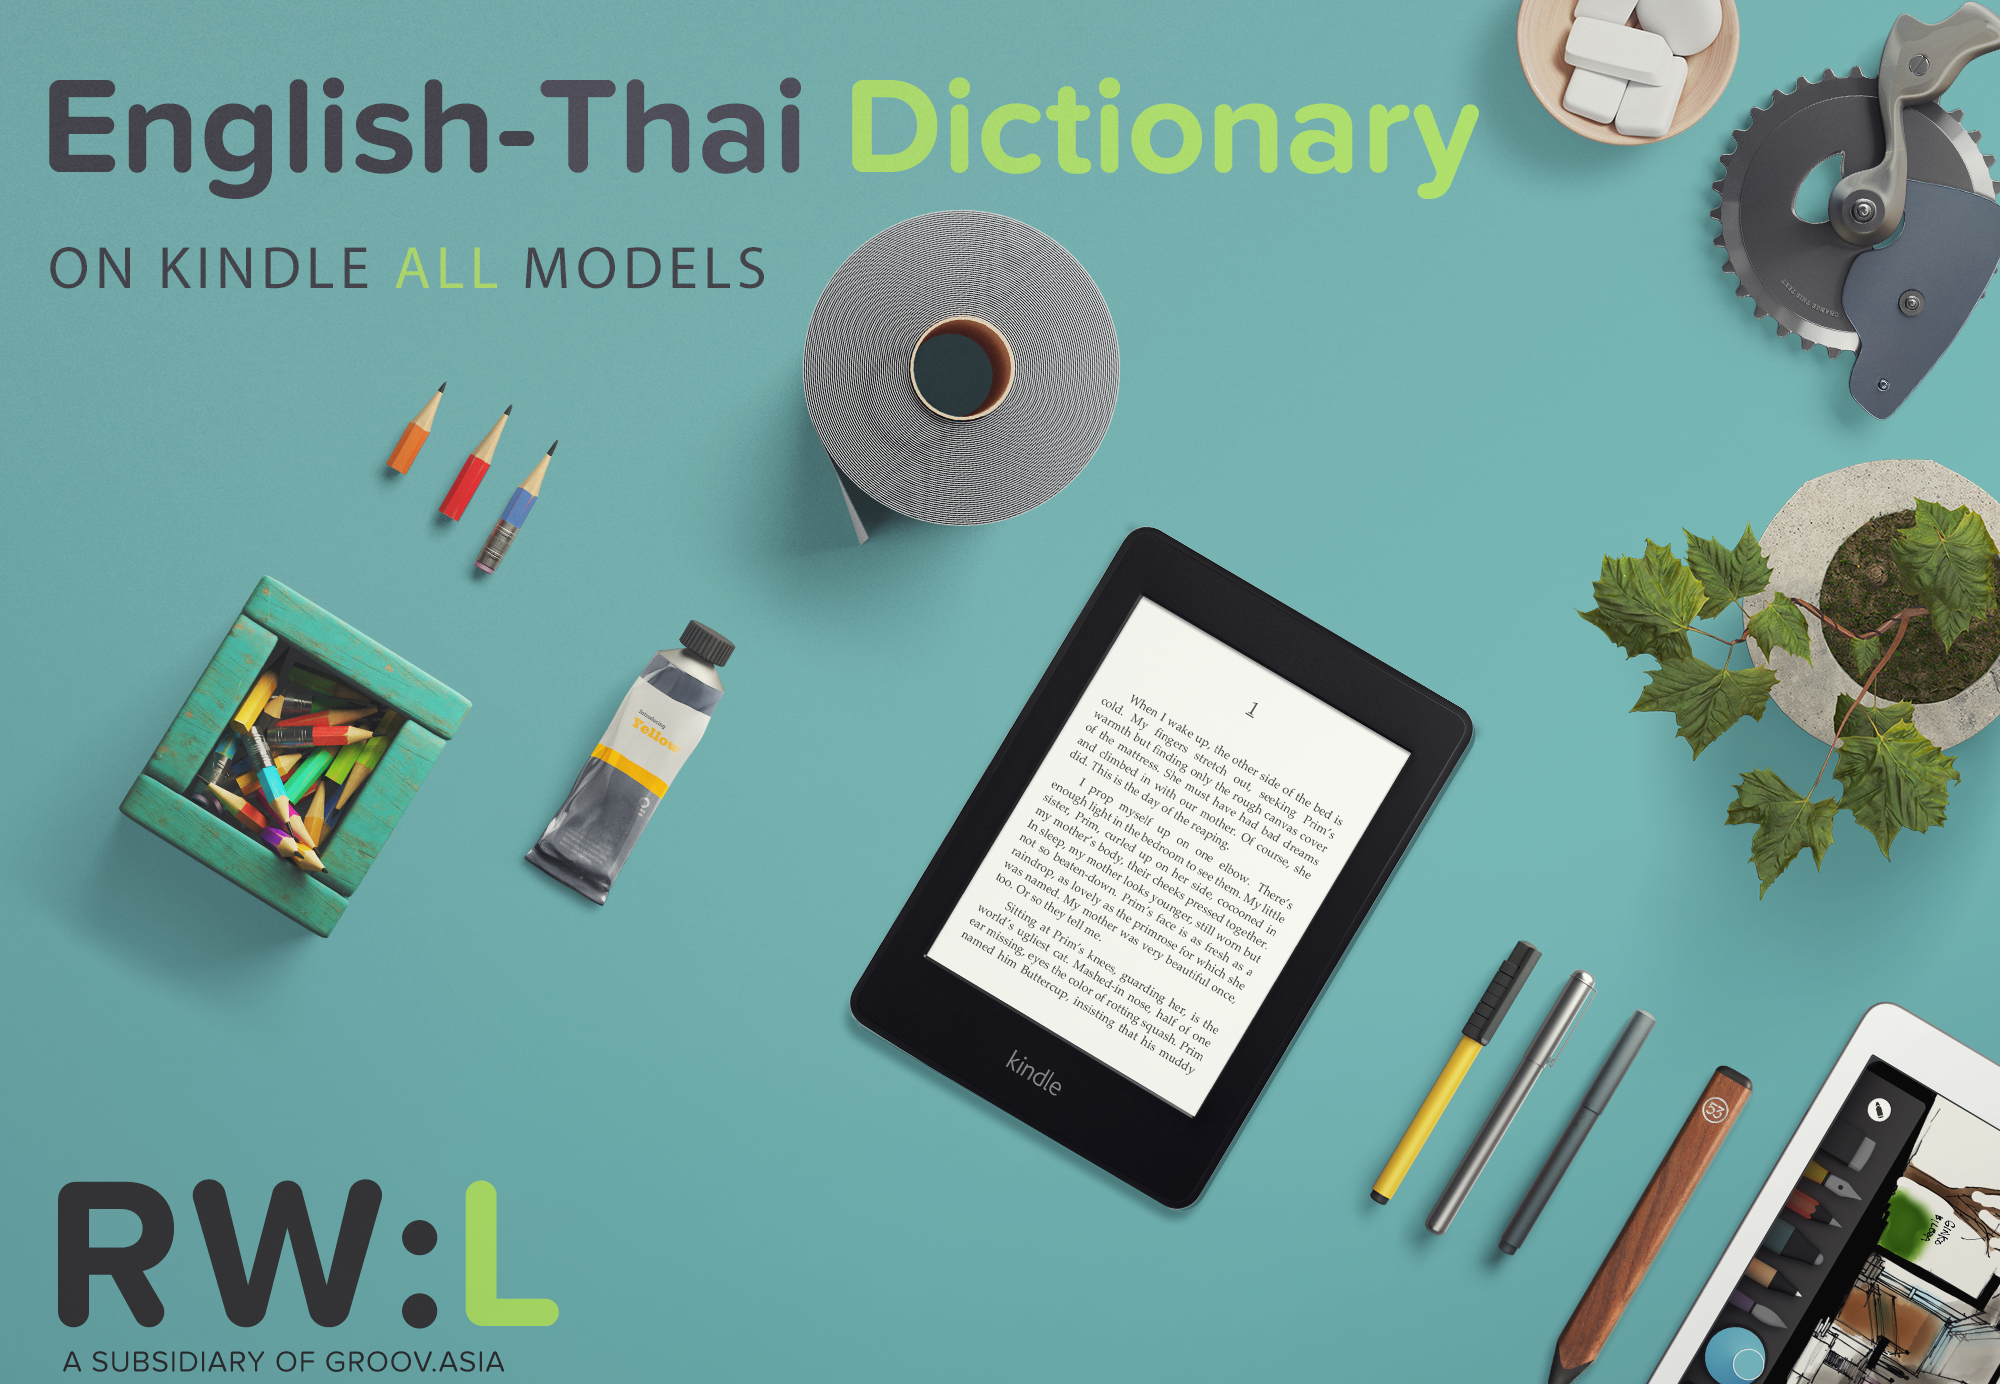 Thai-English Dictionary on Kindle